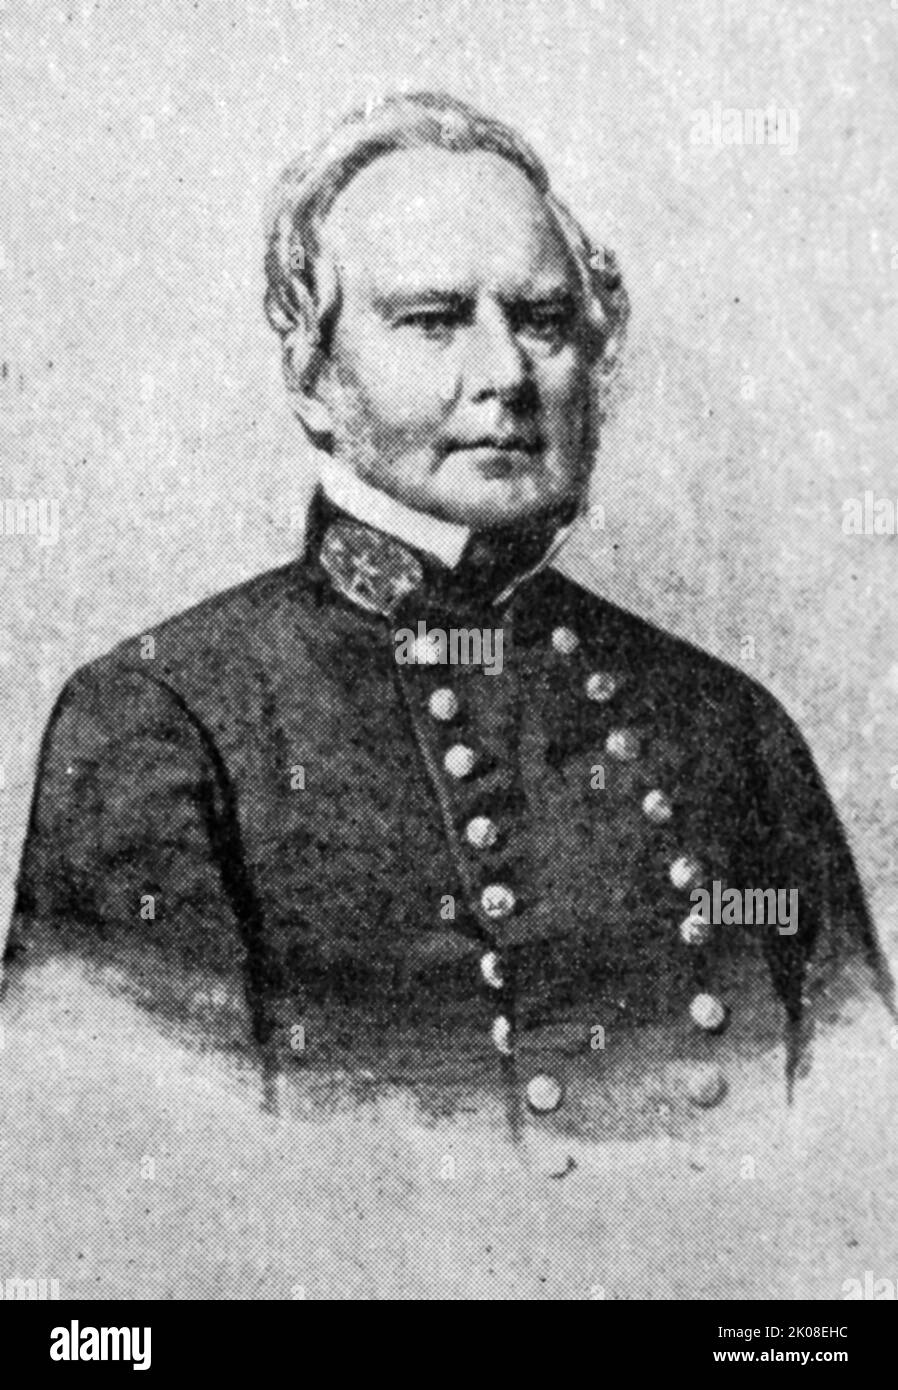 Le major-général Sterling Price (14 septembre 1809 - 29 septembre 1867) était un général des États-Unis et un officier supérieur de l'armée des États confédérés qui a combattu dans les théâtres de la guerre civile américaine de l'Ouest et du Trans-Mississippi. Il s'est élevé pendant la guerre Mexico-américaine et a été gouverneur du Missouri de 1853 à 1857 Banque D'Images